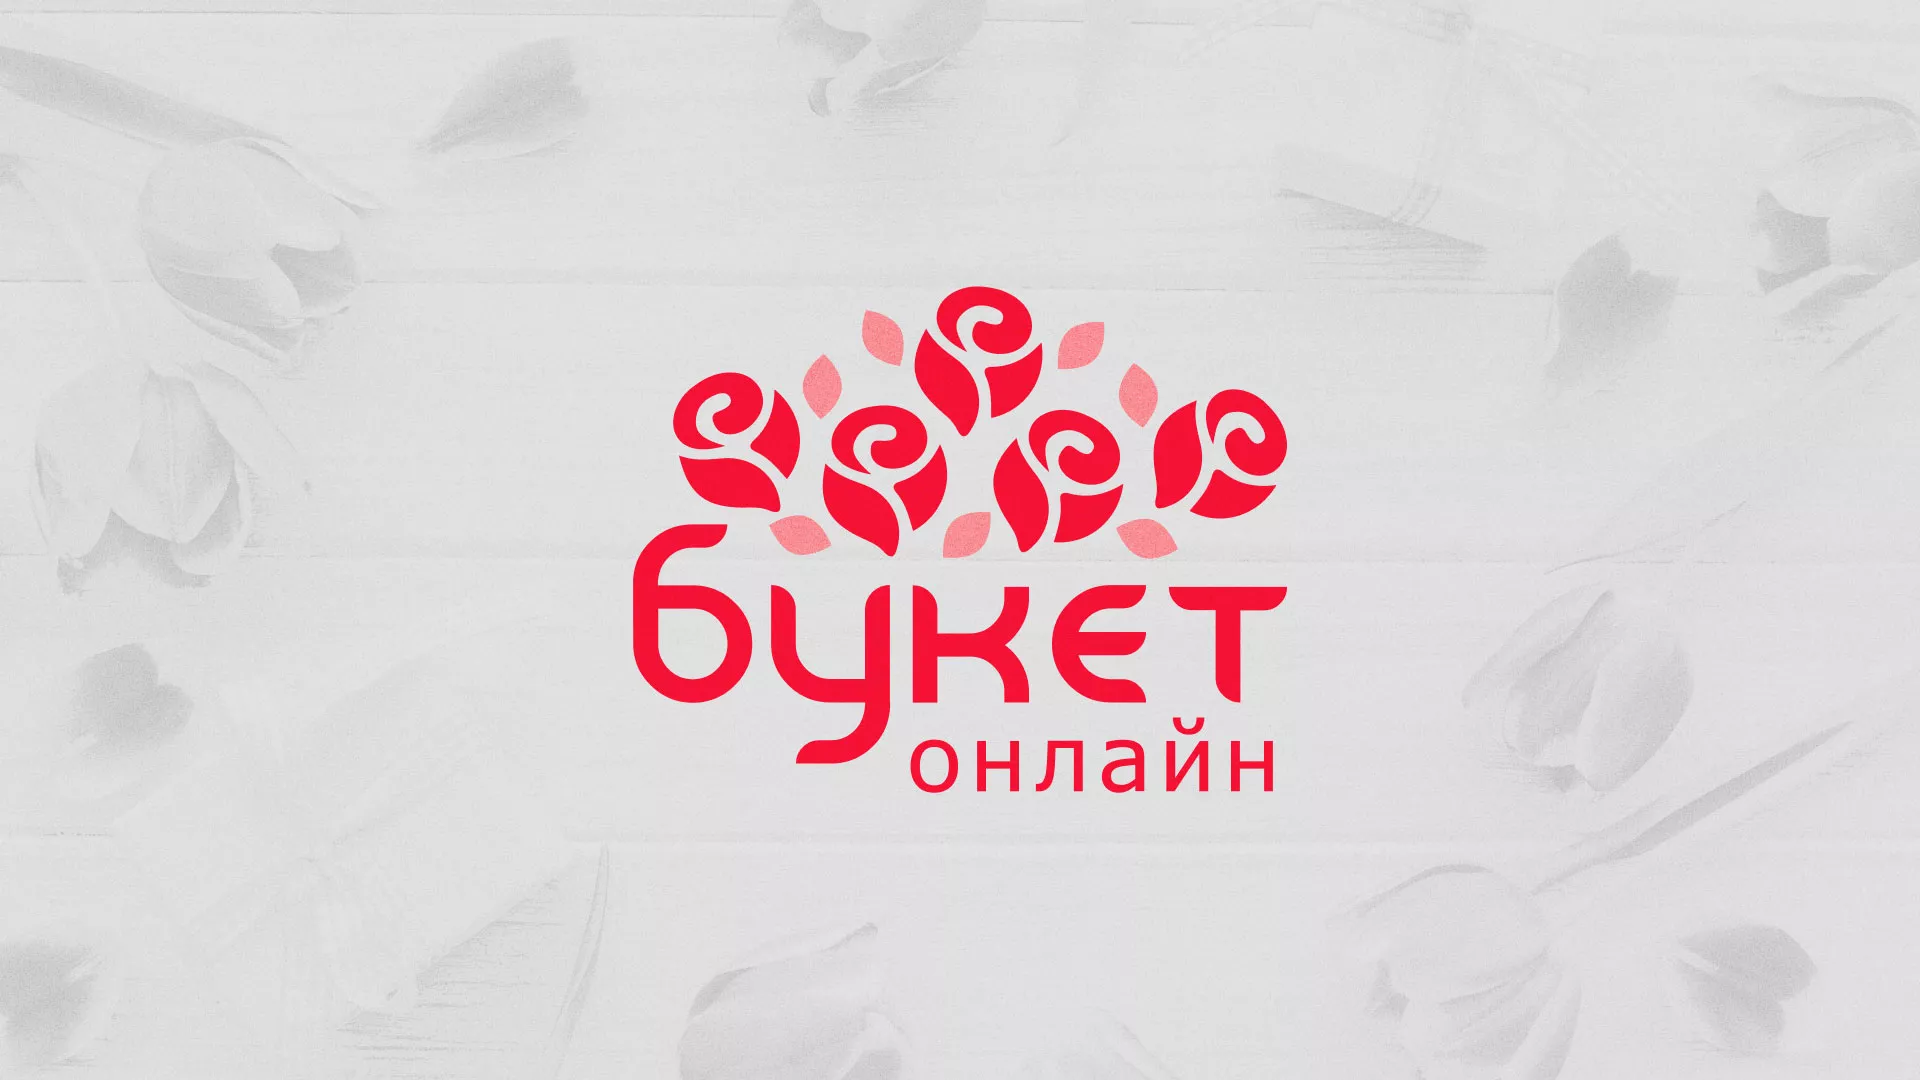 Создание интернет-магазина «Букет-онлайн» по цветам в Карачеве